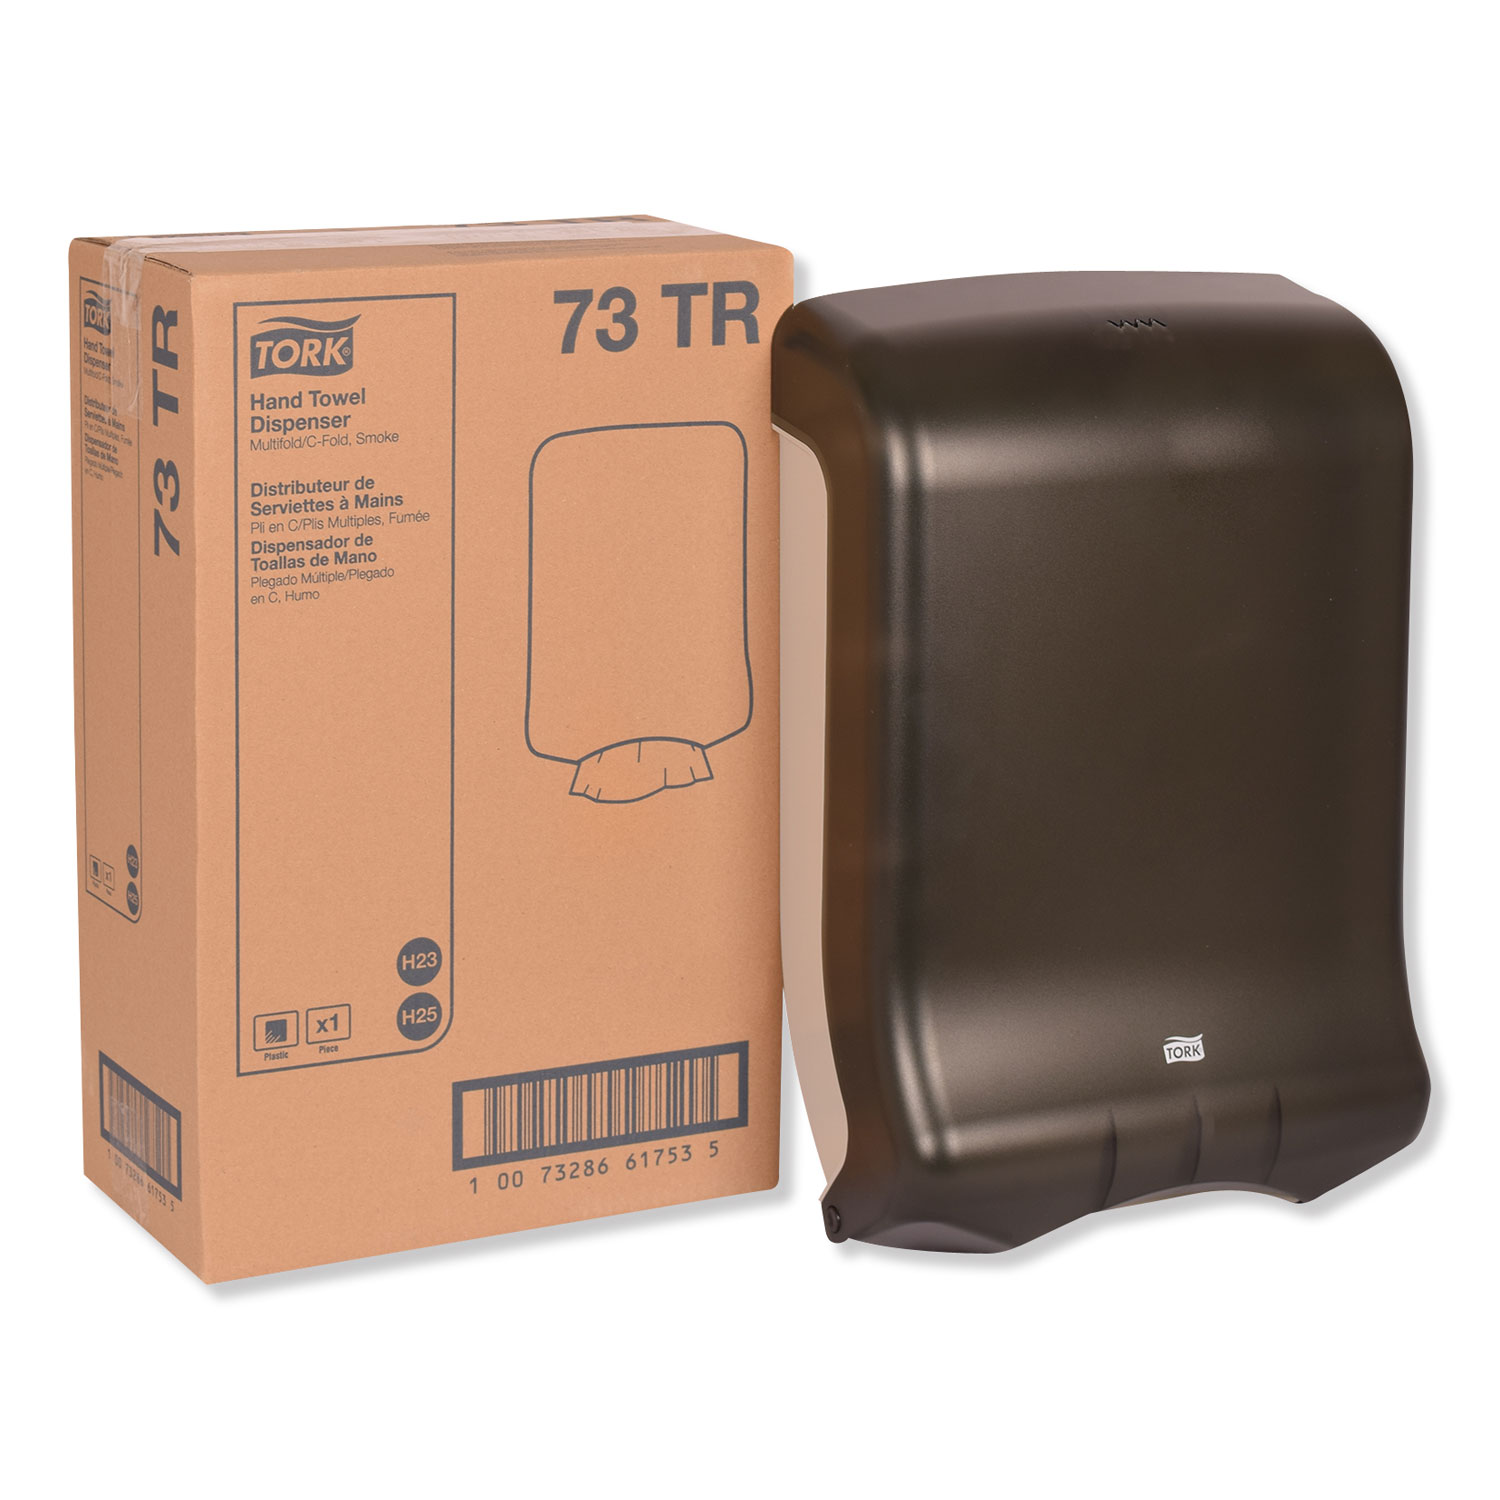  Tork 73TR Folded Towel Dispenser, 11 3/4 x 6 1/4 x 18, Smoke (TRK73TR) 